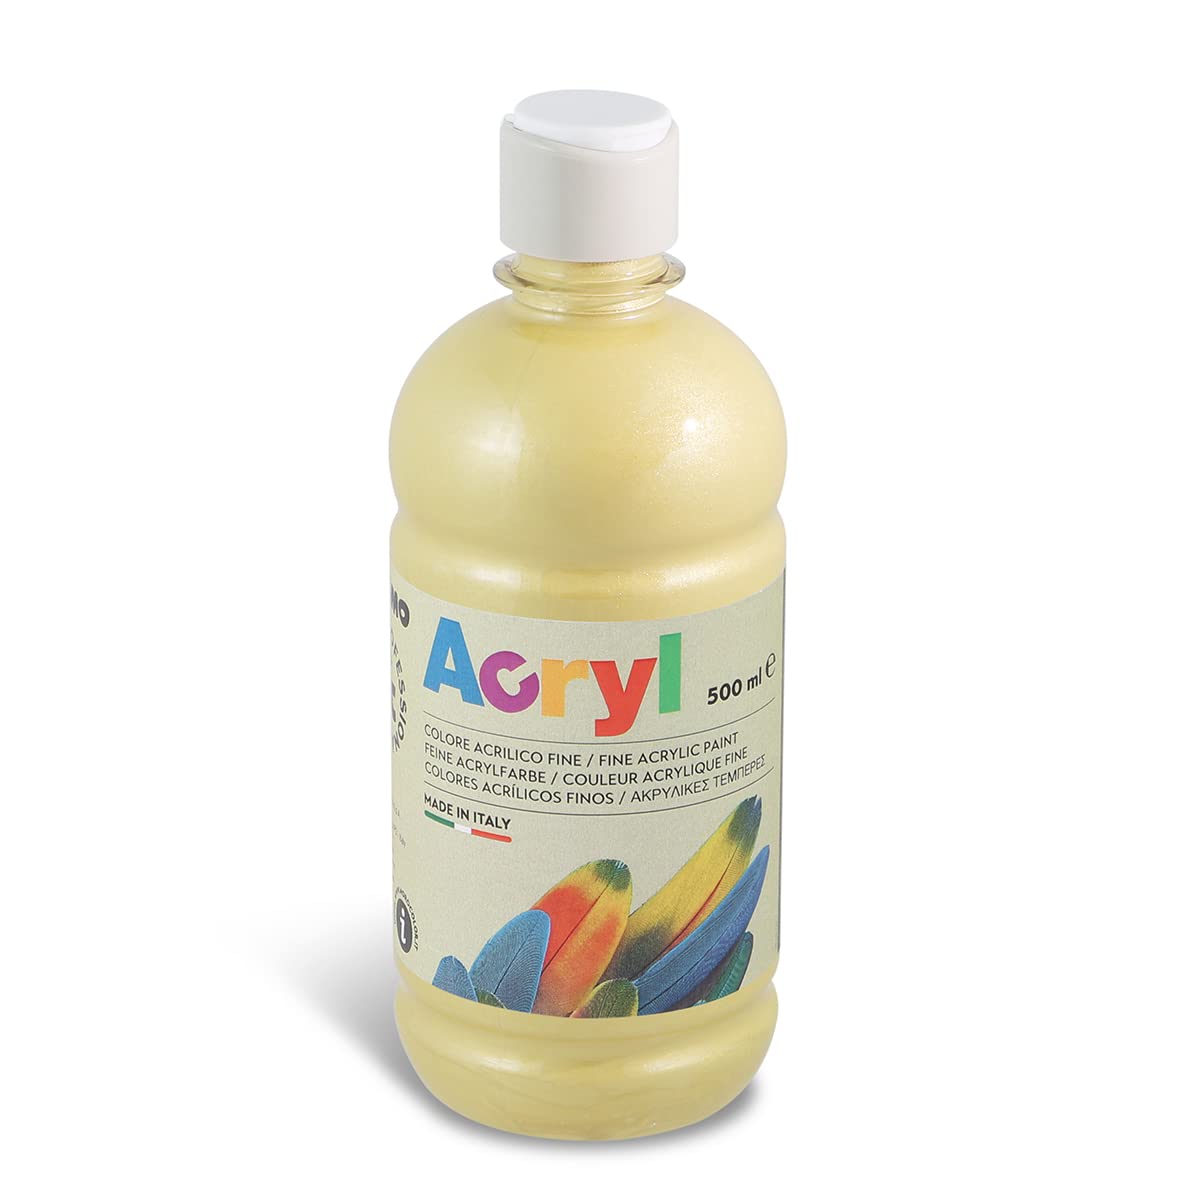 Morocolor PRIMO Acryl, 1 Bottiglia da 500 ml di Colore Acrilico Fine, Oro,  Effetto Coprente e Luminoso, Dotato di Tappo Dosatore